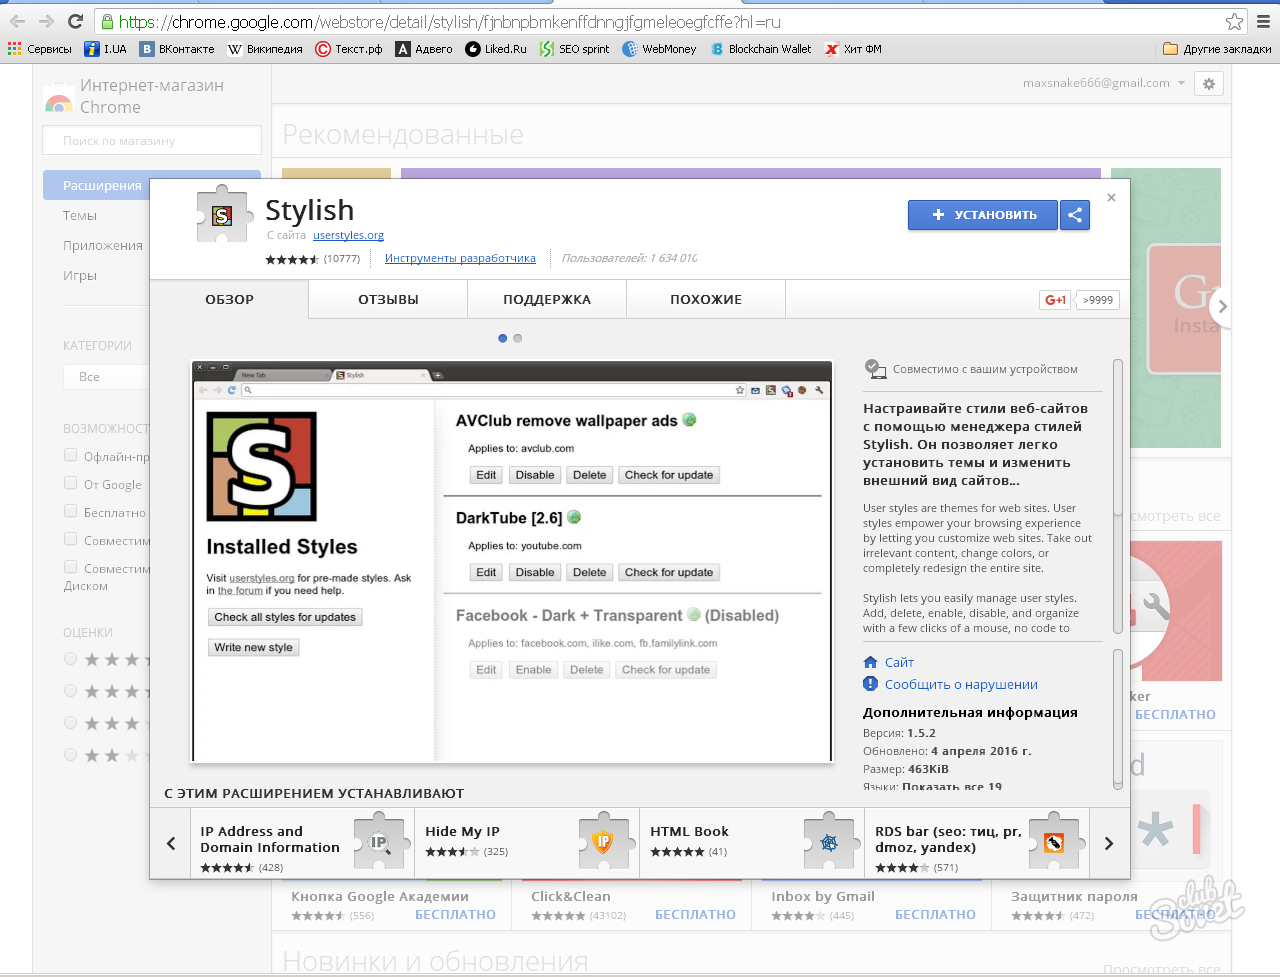 Интернет-магазин Chrome. Расширения для Яндекса stylish. Старый Интерфейс гугл. Старые дизайны программ.